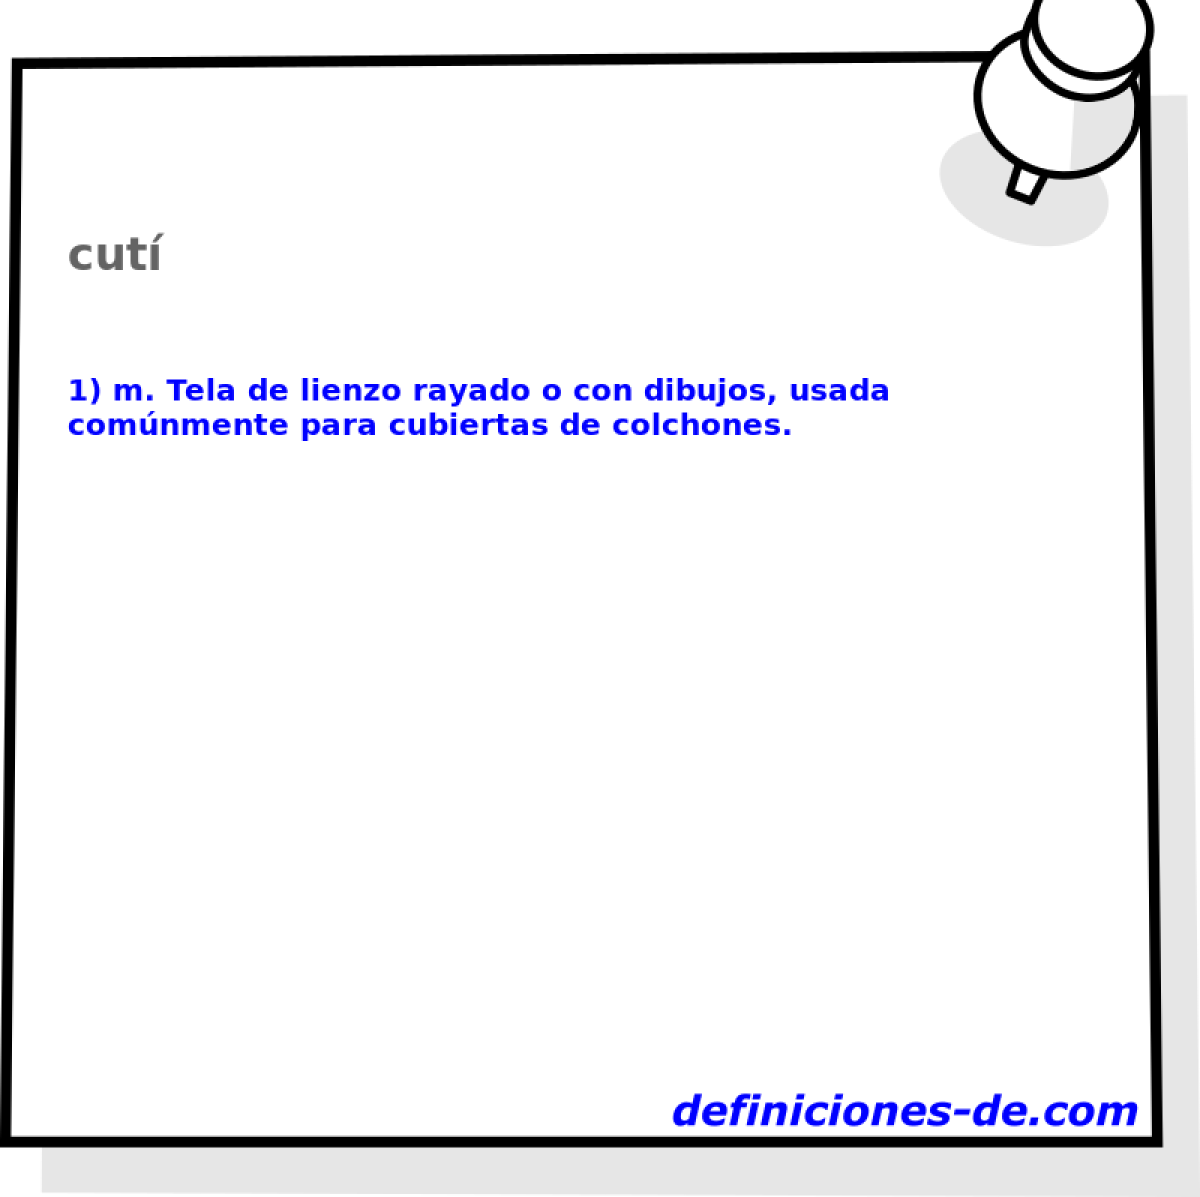 cut 